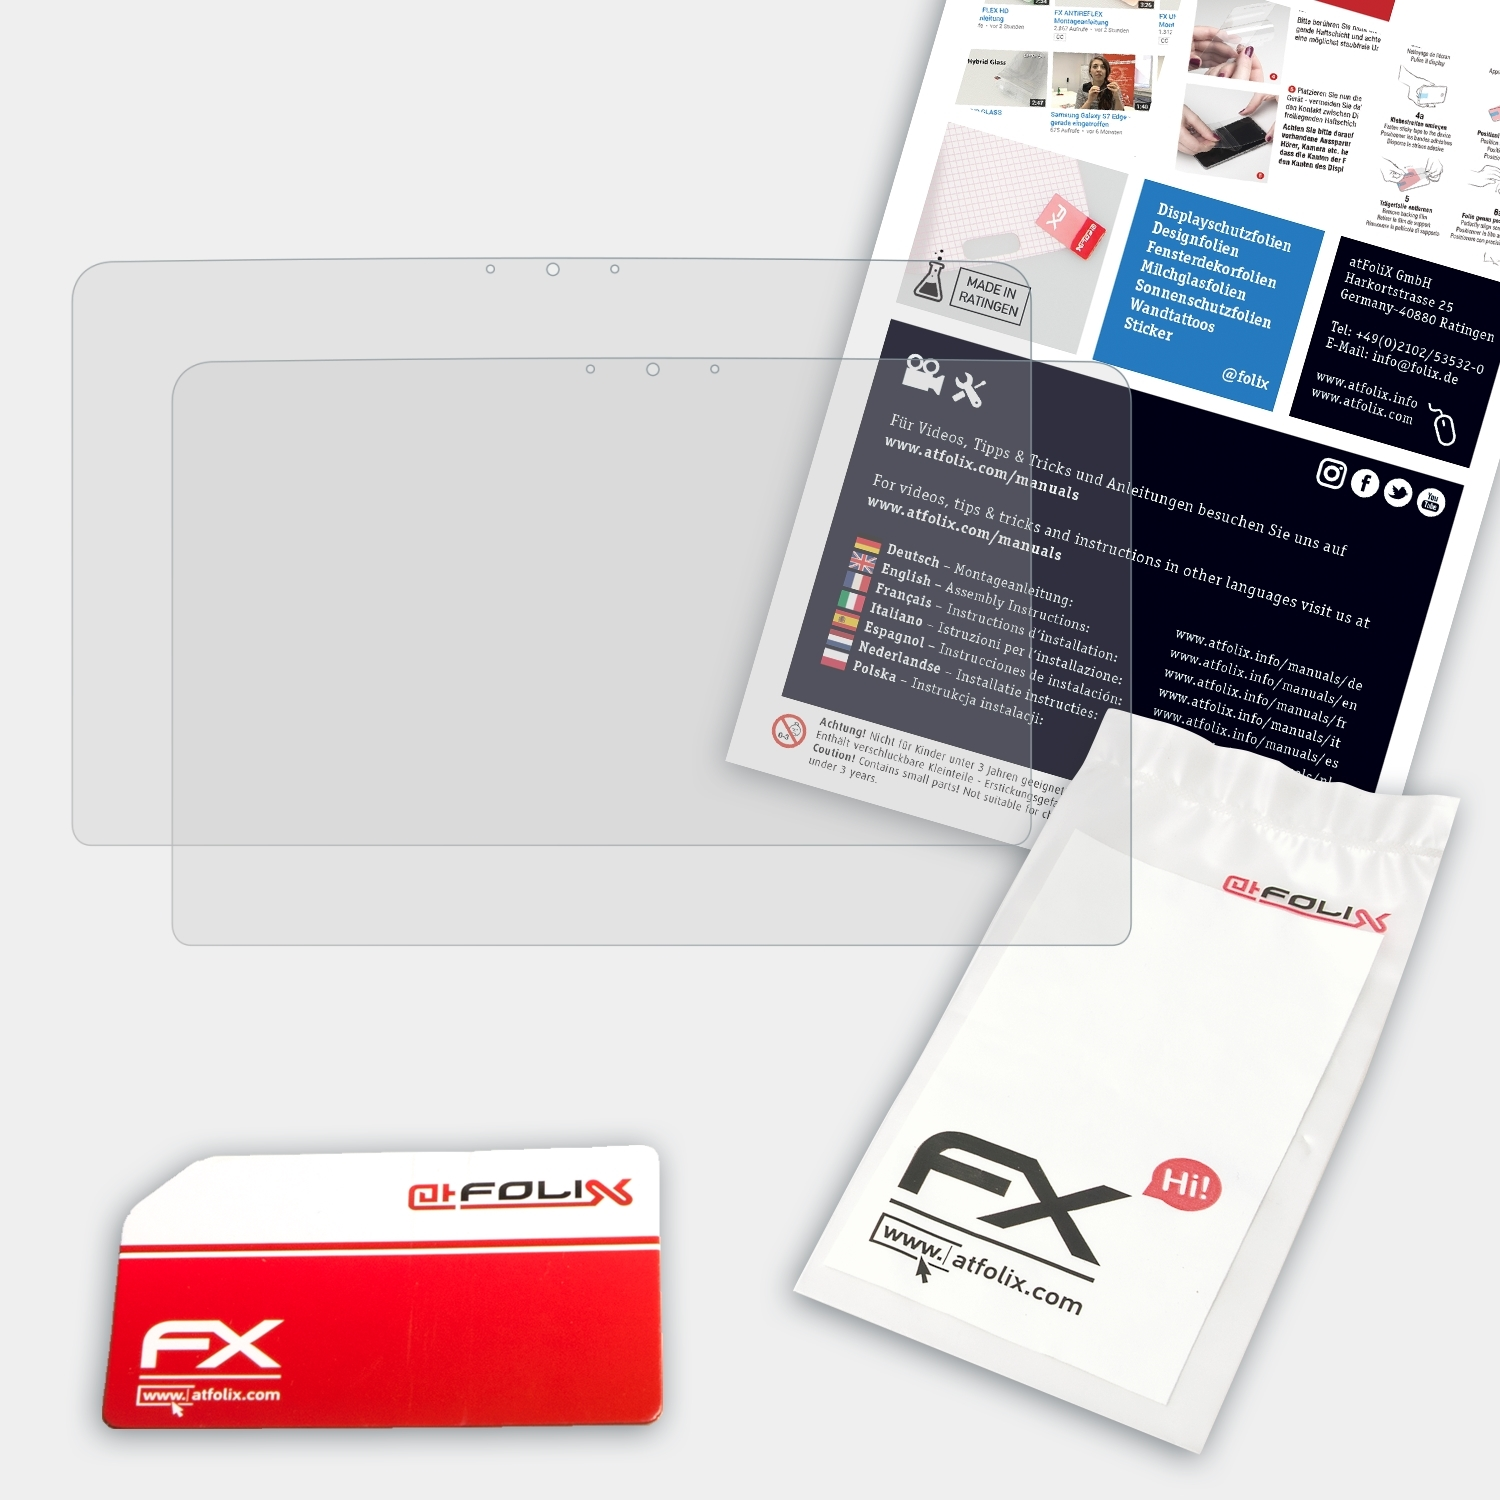 ATFOLIX 2x FX-Antireflex Version Dell (L321X, XPS 13 Displayschutz(für 2012)) Ultrabook